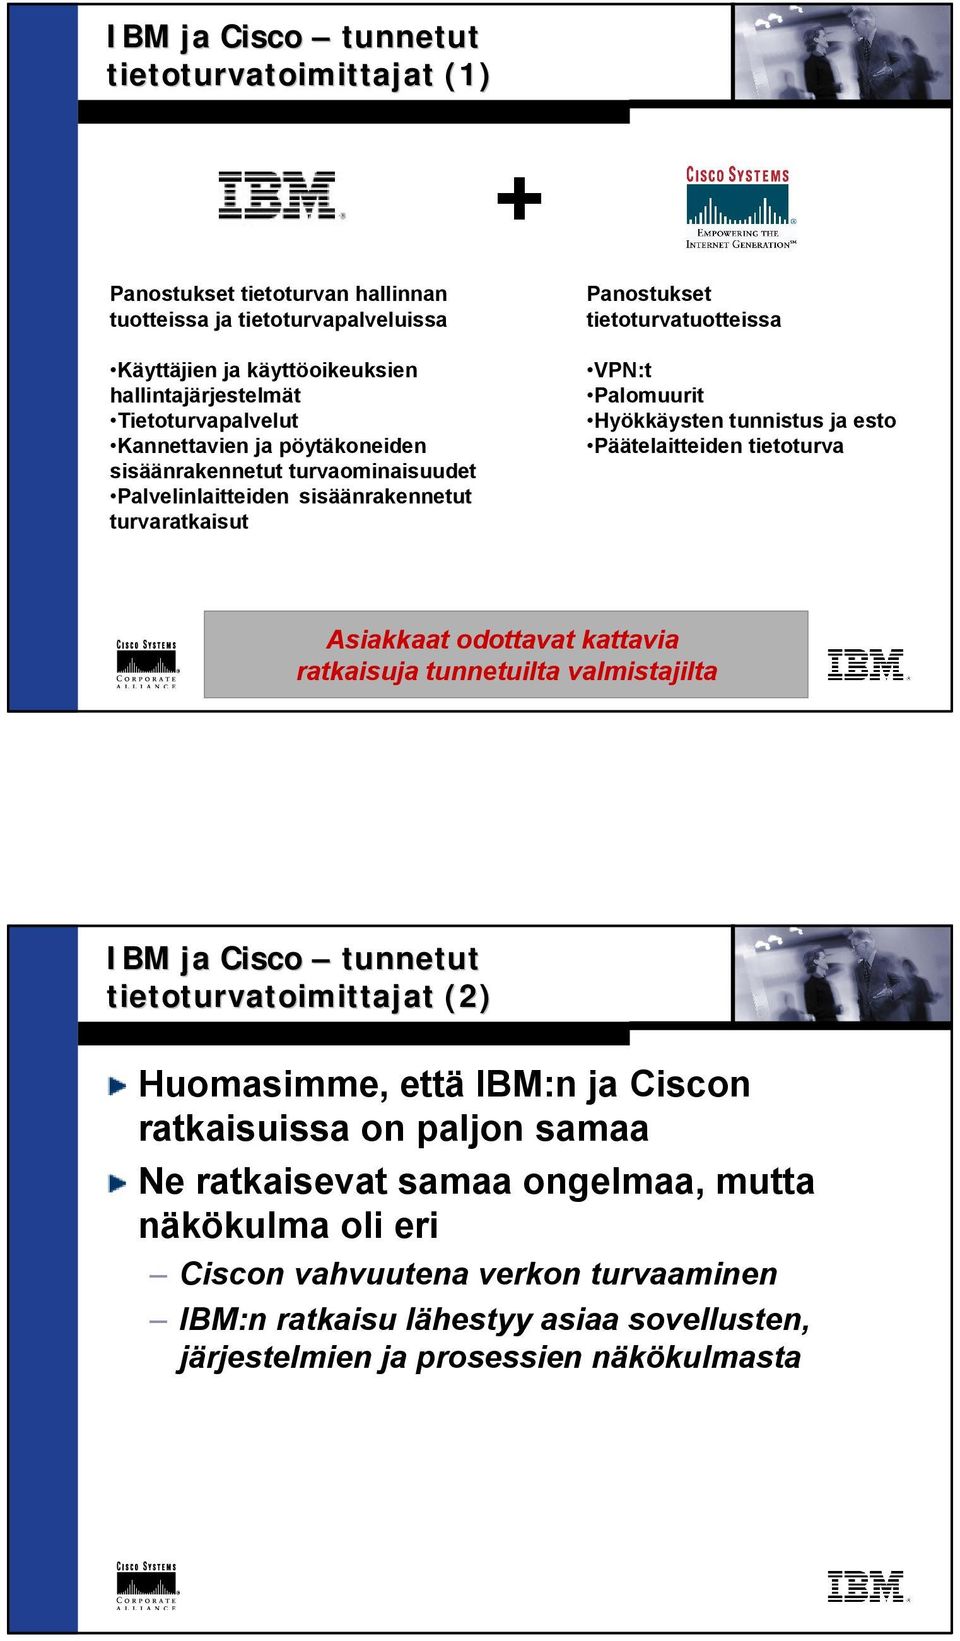 tunnistus ja esto Päätelaitteiden tietoturva Asiakkaat odottavat kattavia ratkaisuja tunnetuilta valmistajilta IBM ja tunnetut tietoturvatoimittajat (2) Huomasimme, että IBM:n ja n